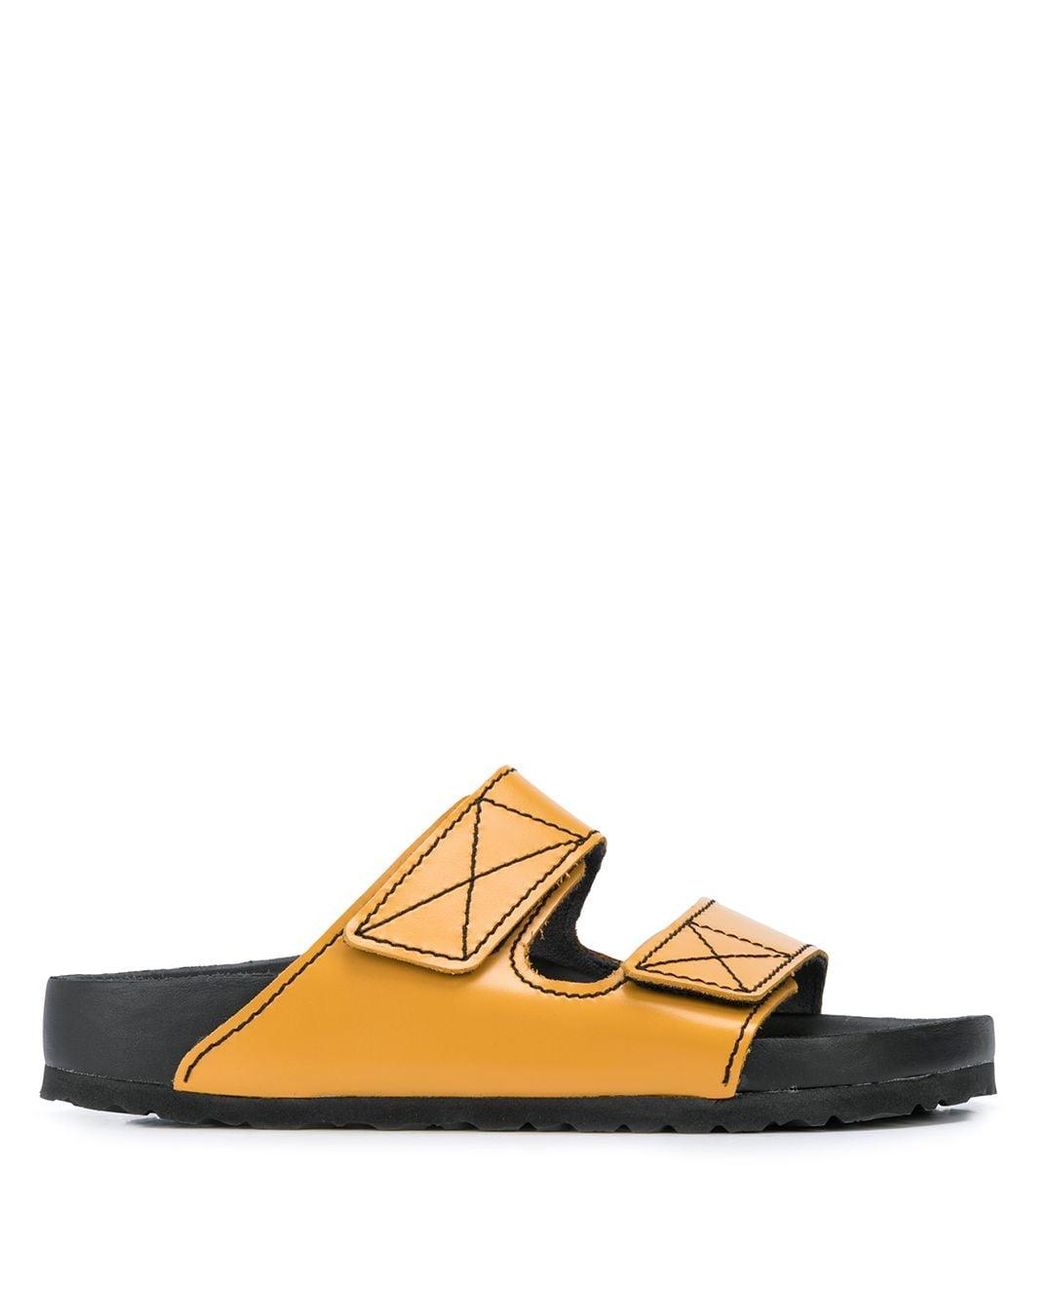 Proenza Schouler X Birkenstock Arizona Sandals | Lyst